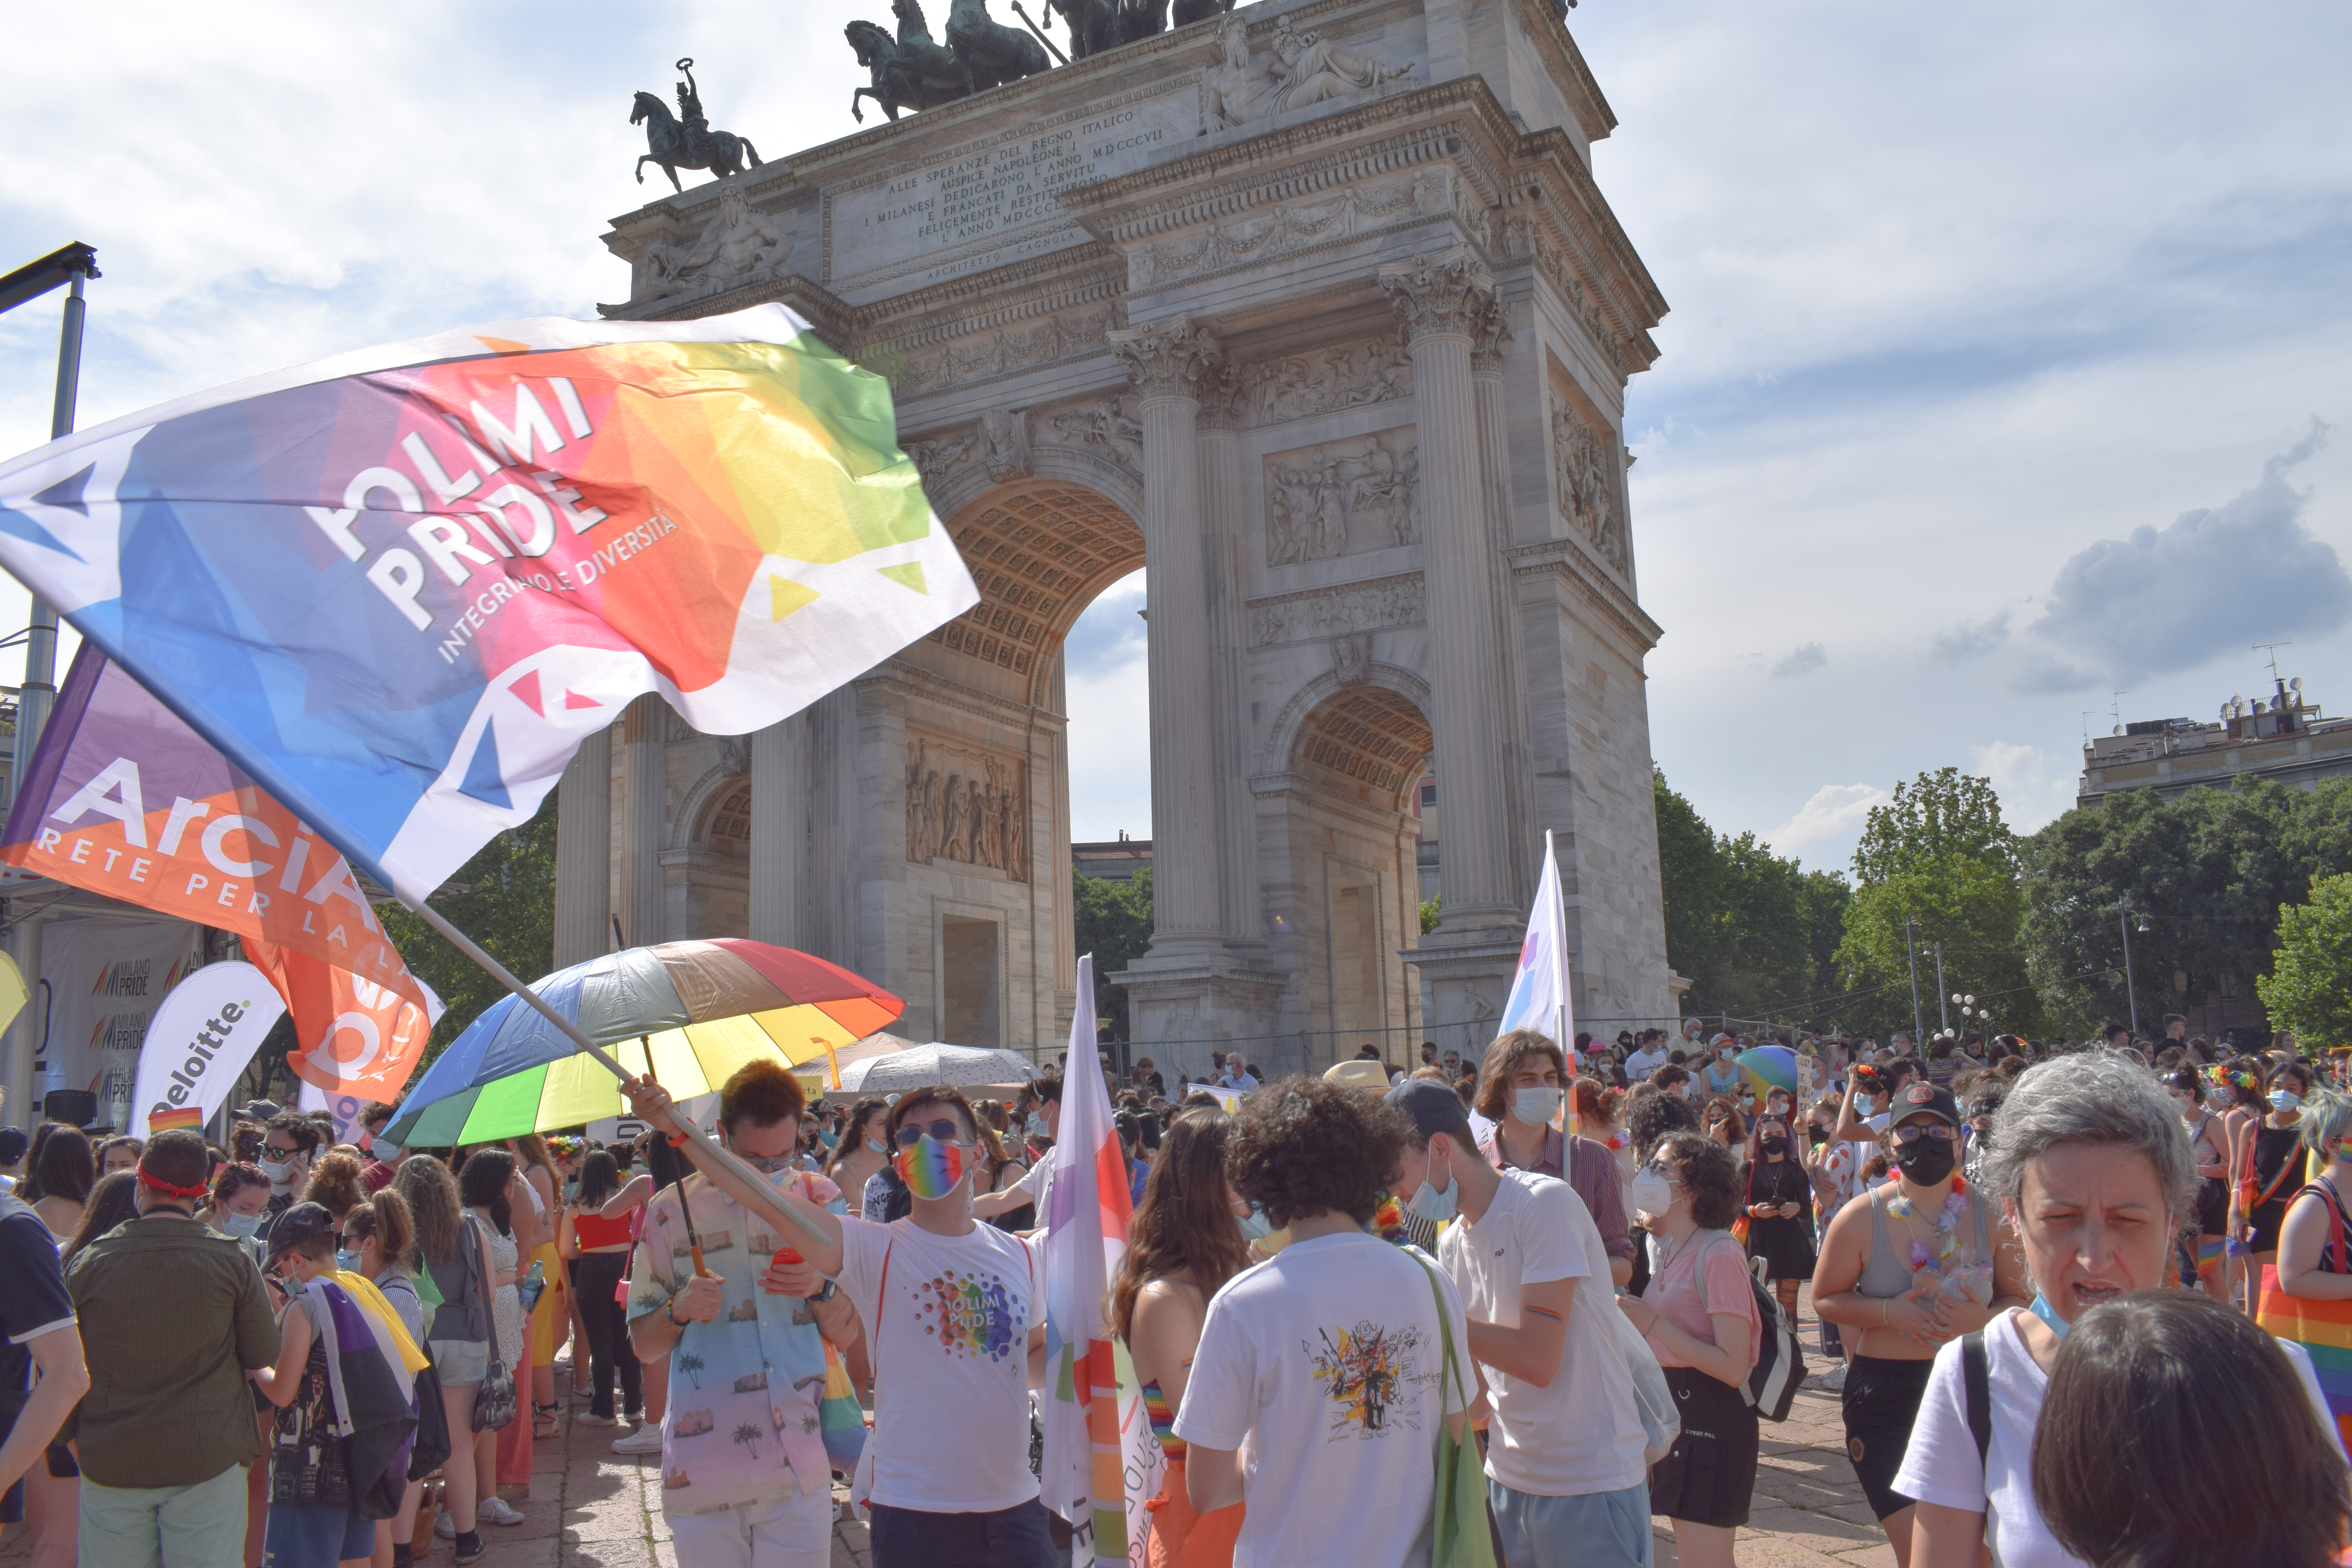 PoliEdro at Milano Pride 2021 in Arco della Pace